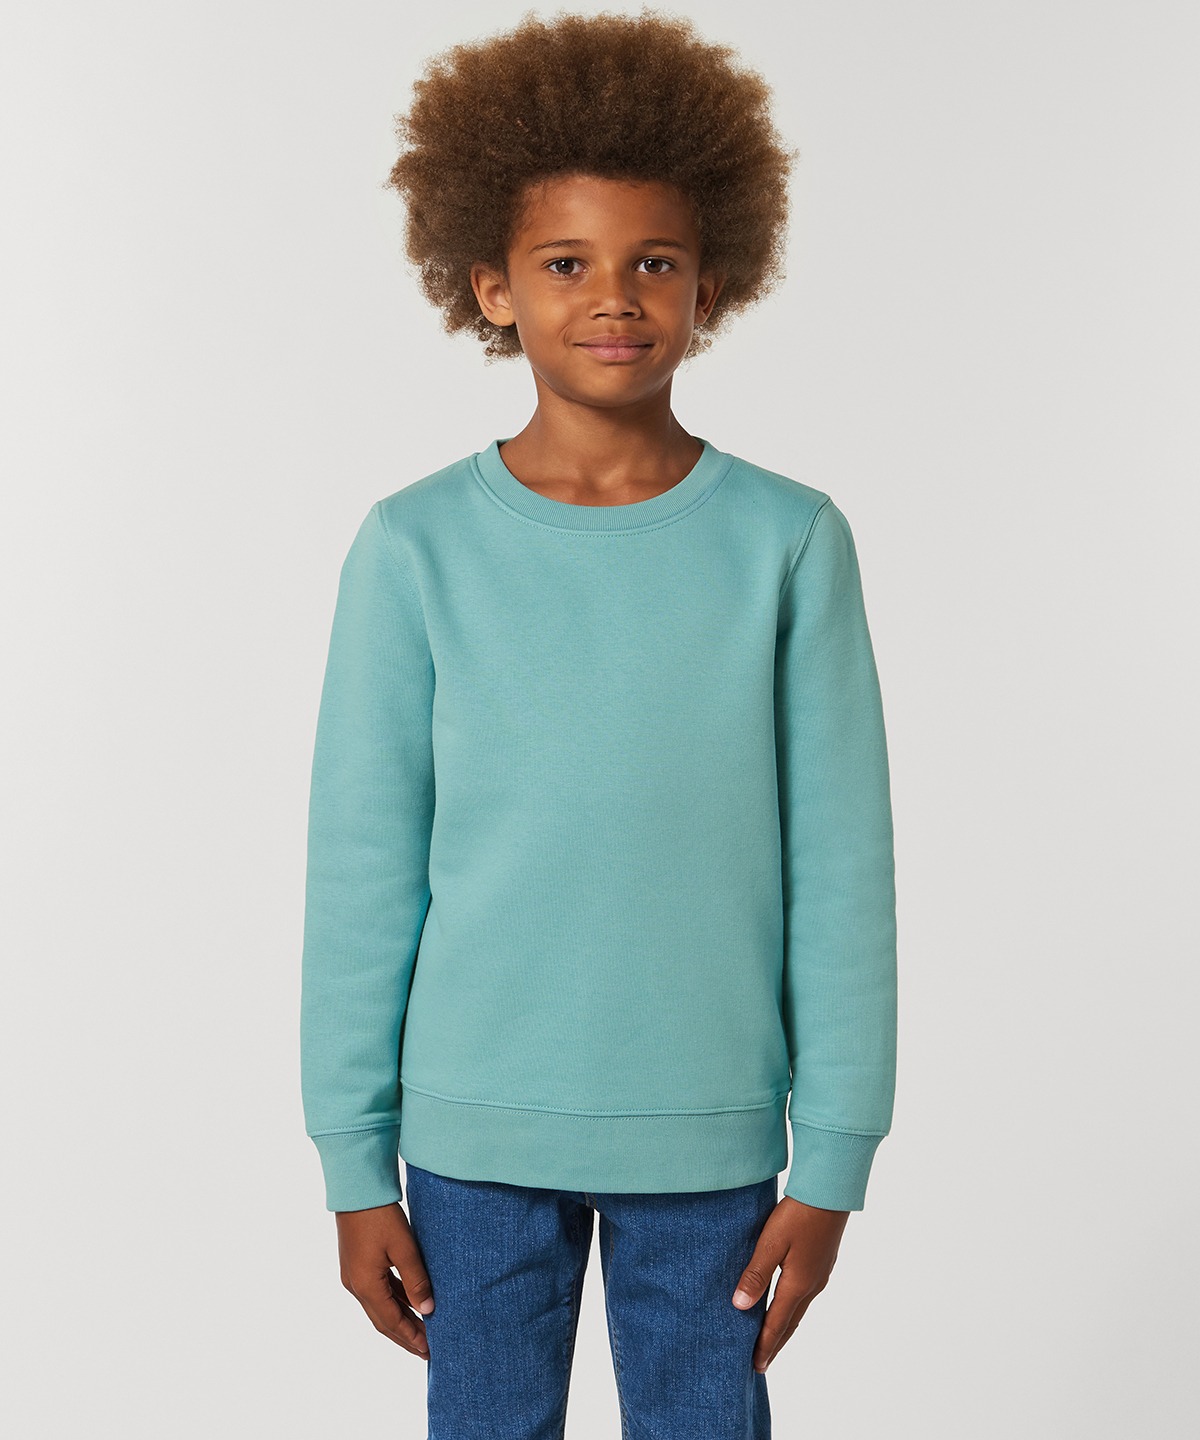 Kids mini Changer iconic crew neck sweatshirt